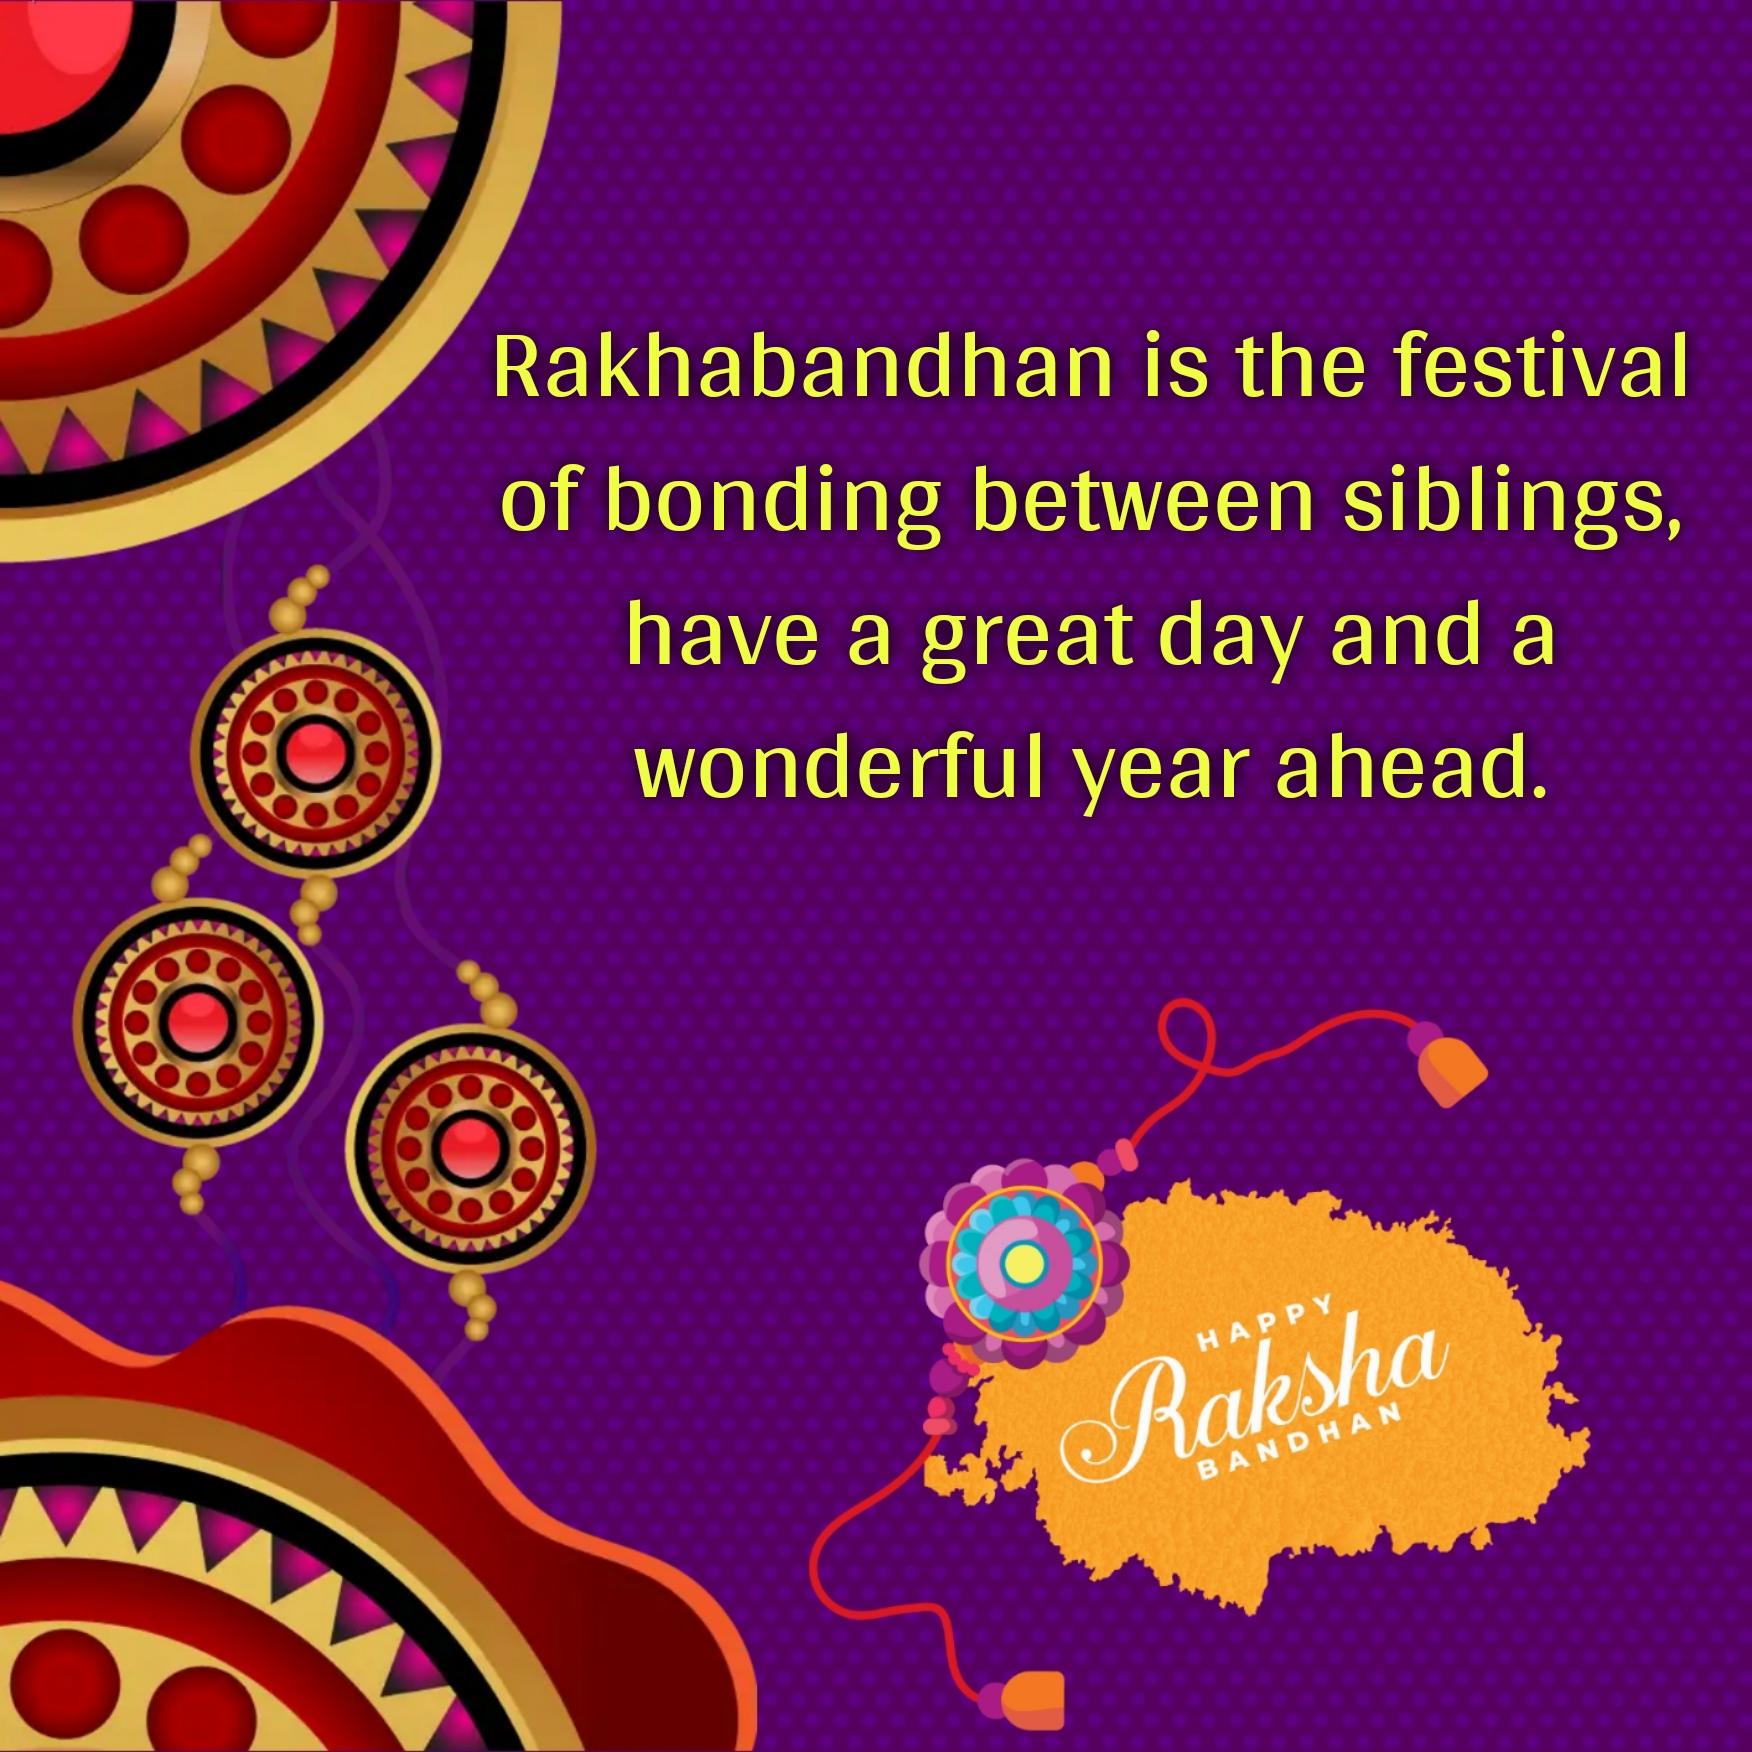 Rakhabandhan is the festival of bonding between siblings